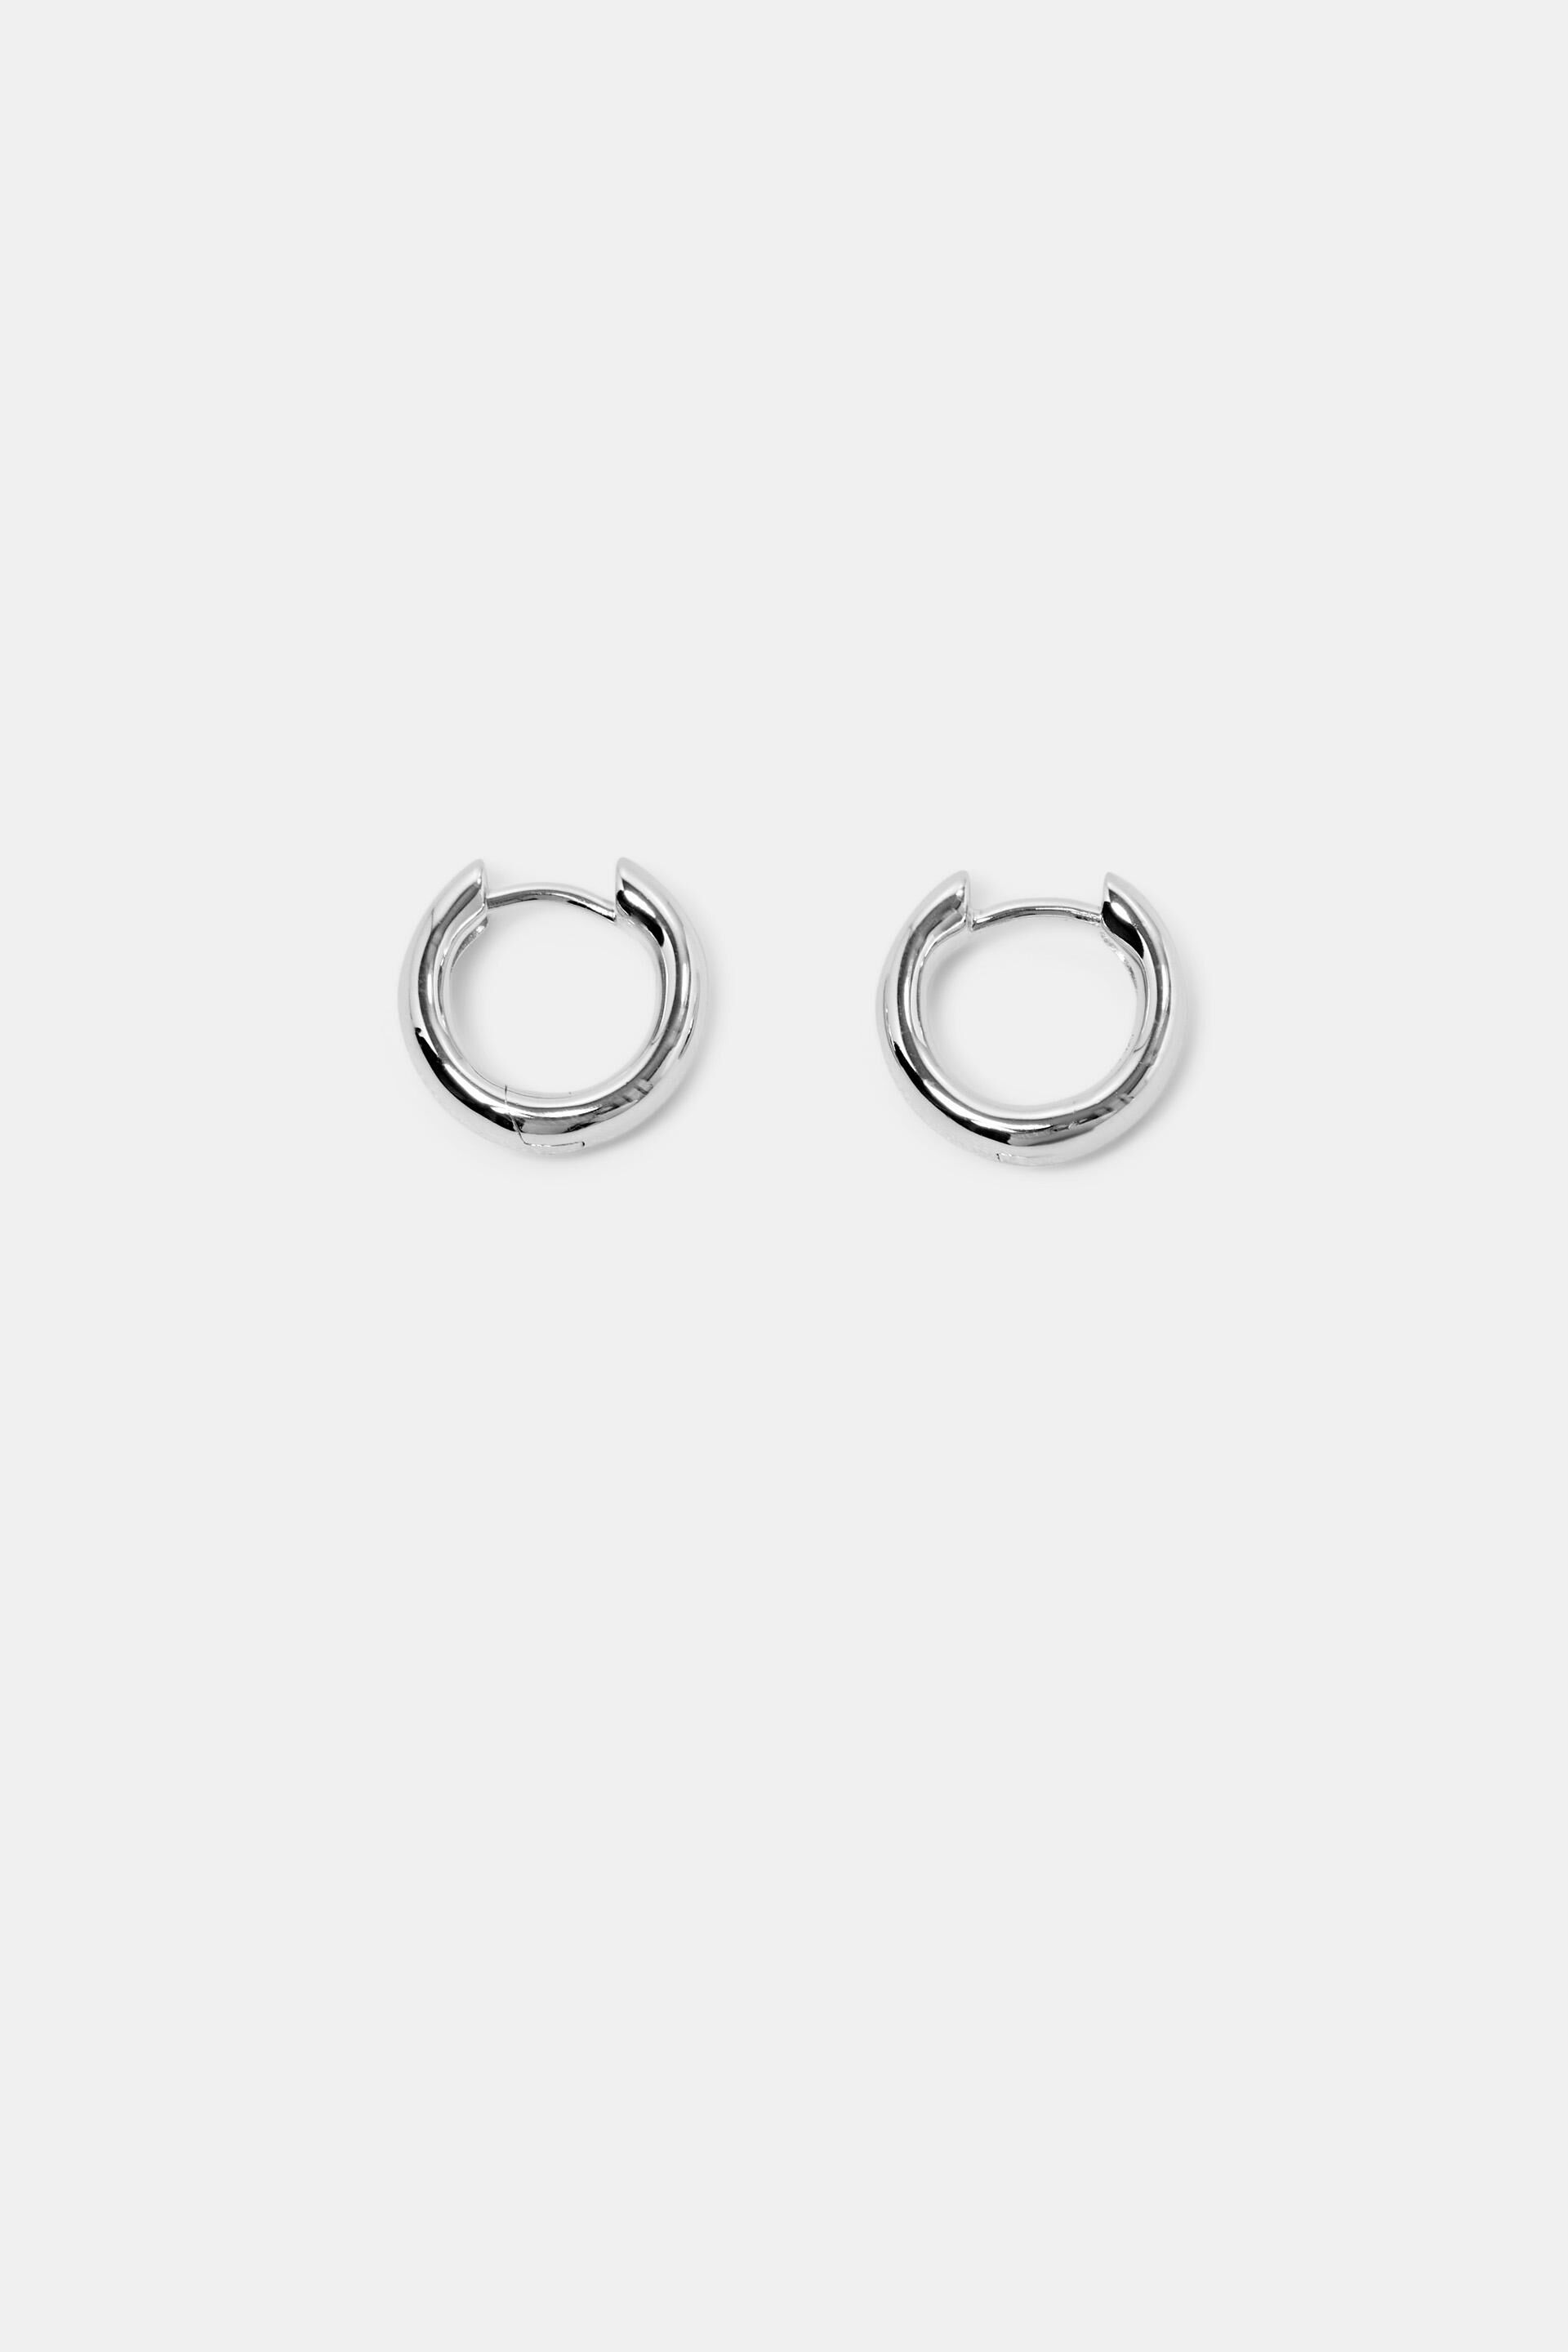 Esprit Small Hoop Earrings Silver Sterling